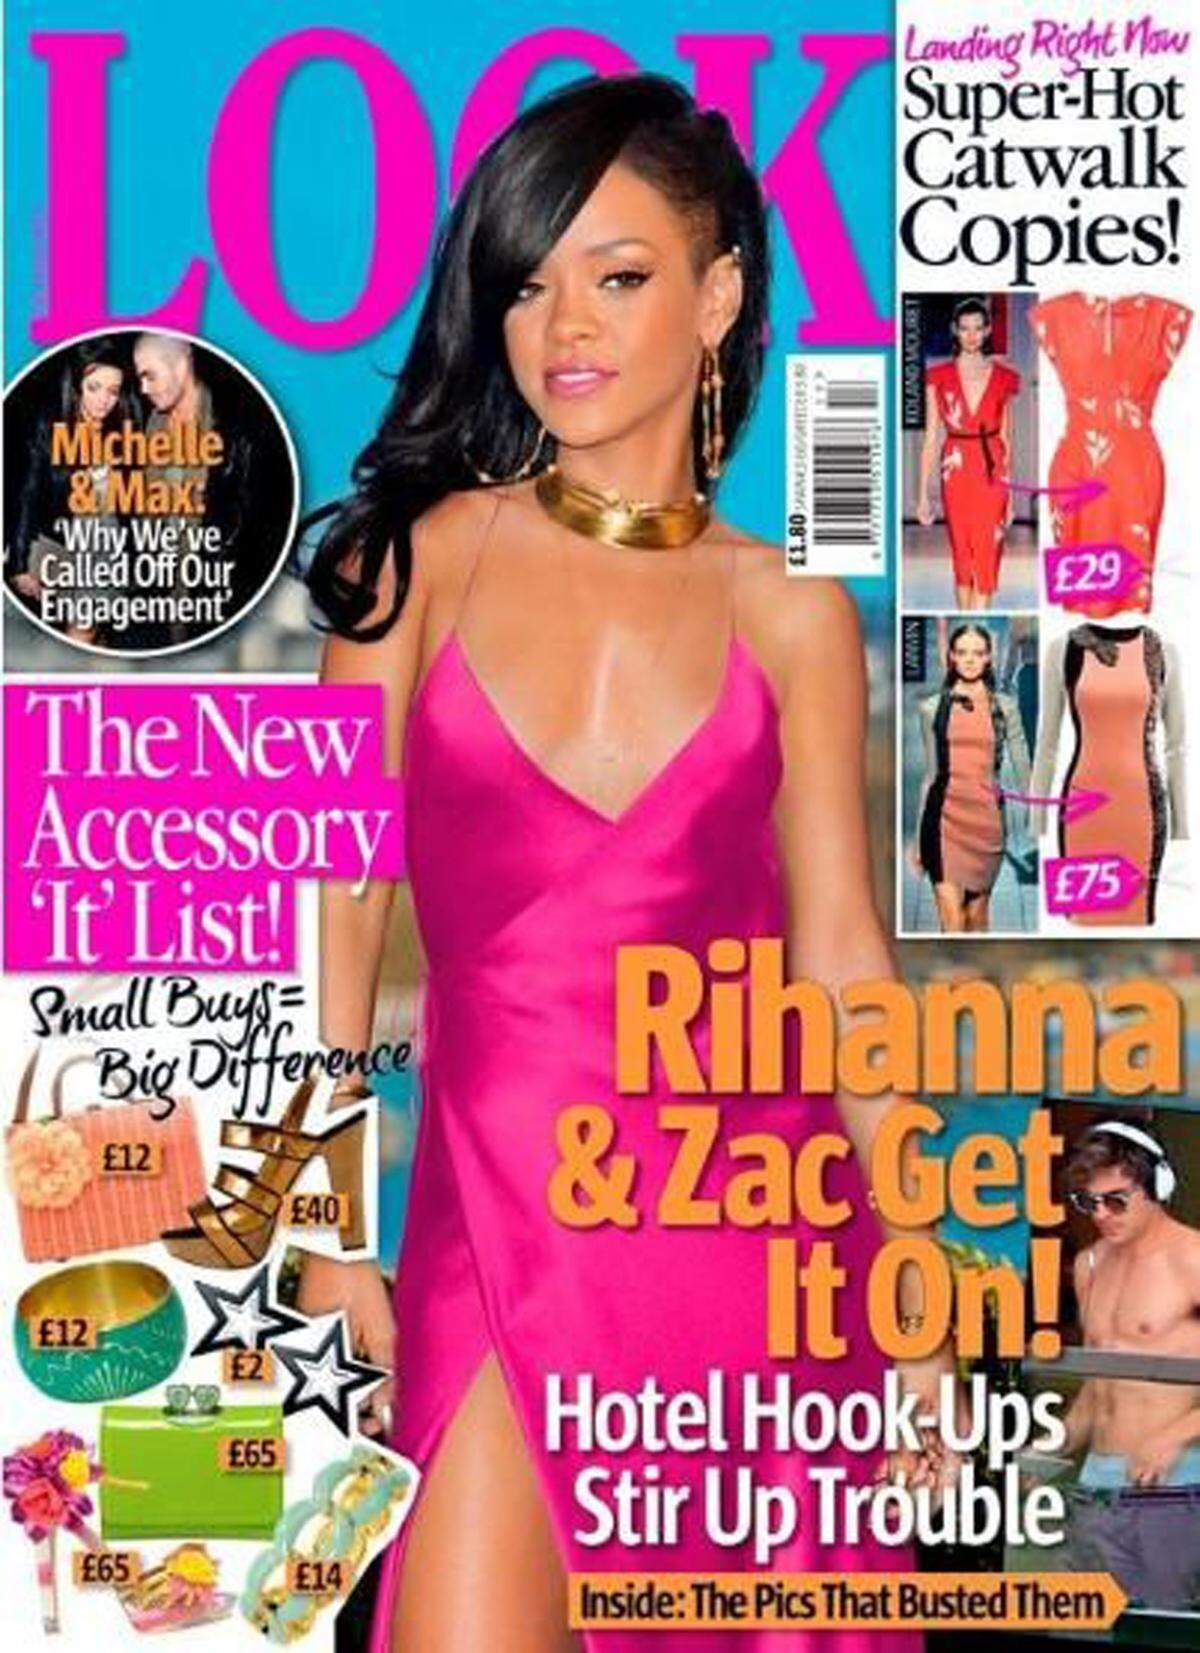 Ganz künstlich sieht Rihanna am Look-Titel aus. Kein Wunder, Kopf und Körper gehören zu unterschiedlichen Bildern der Sängerin.